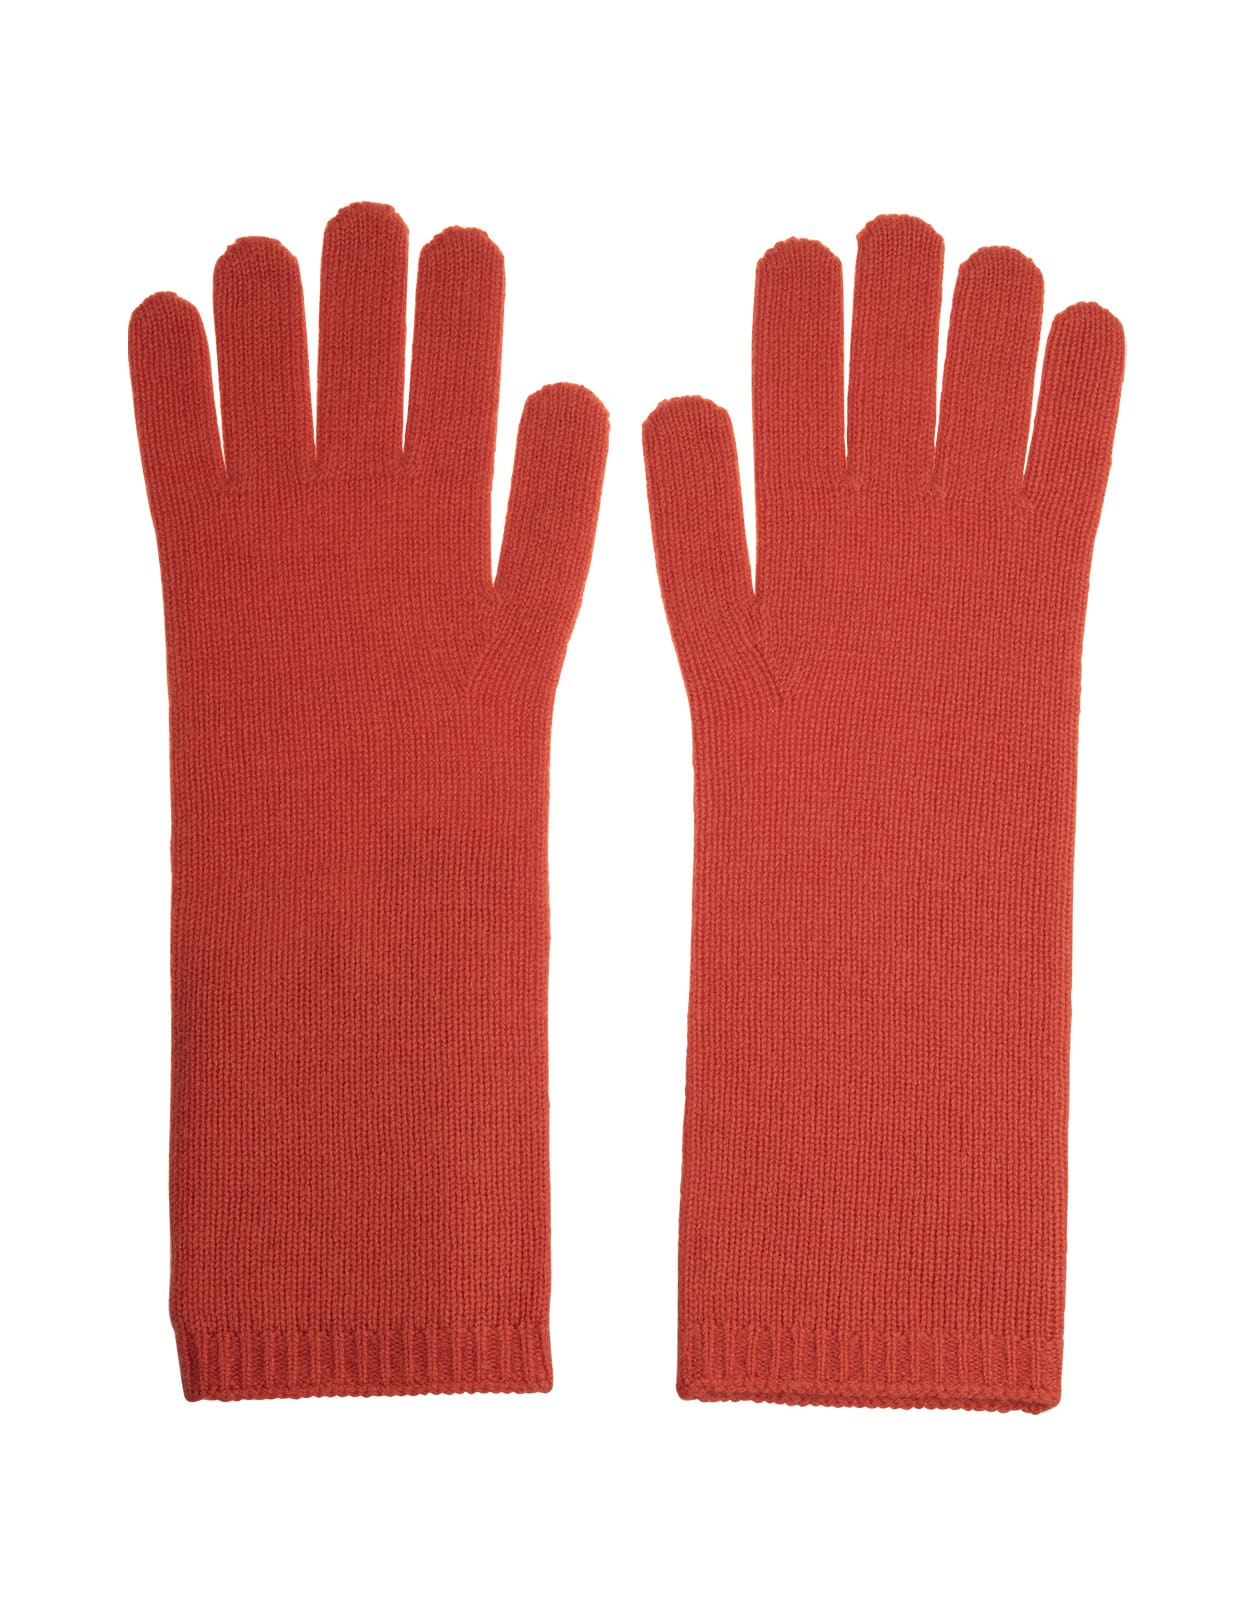 Max Mara Orange Conio Gloves